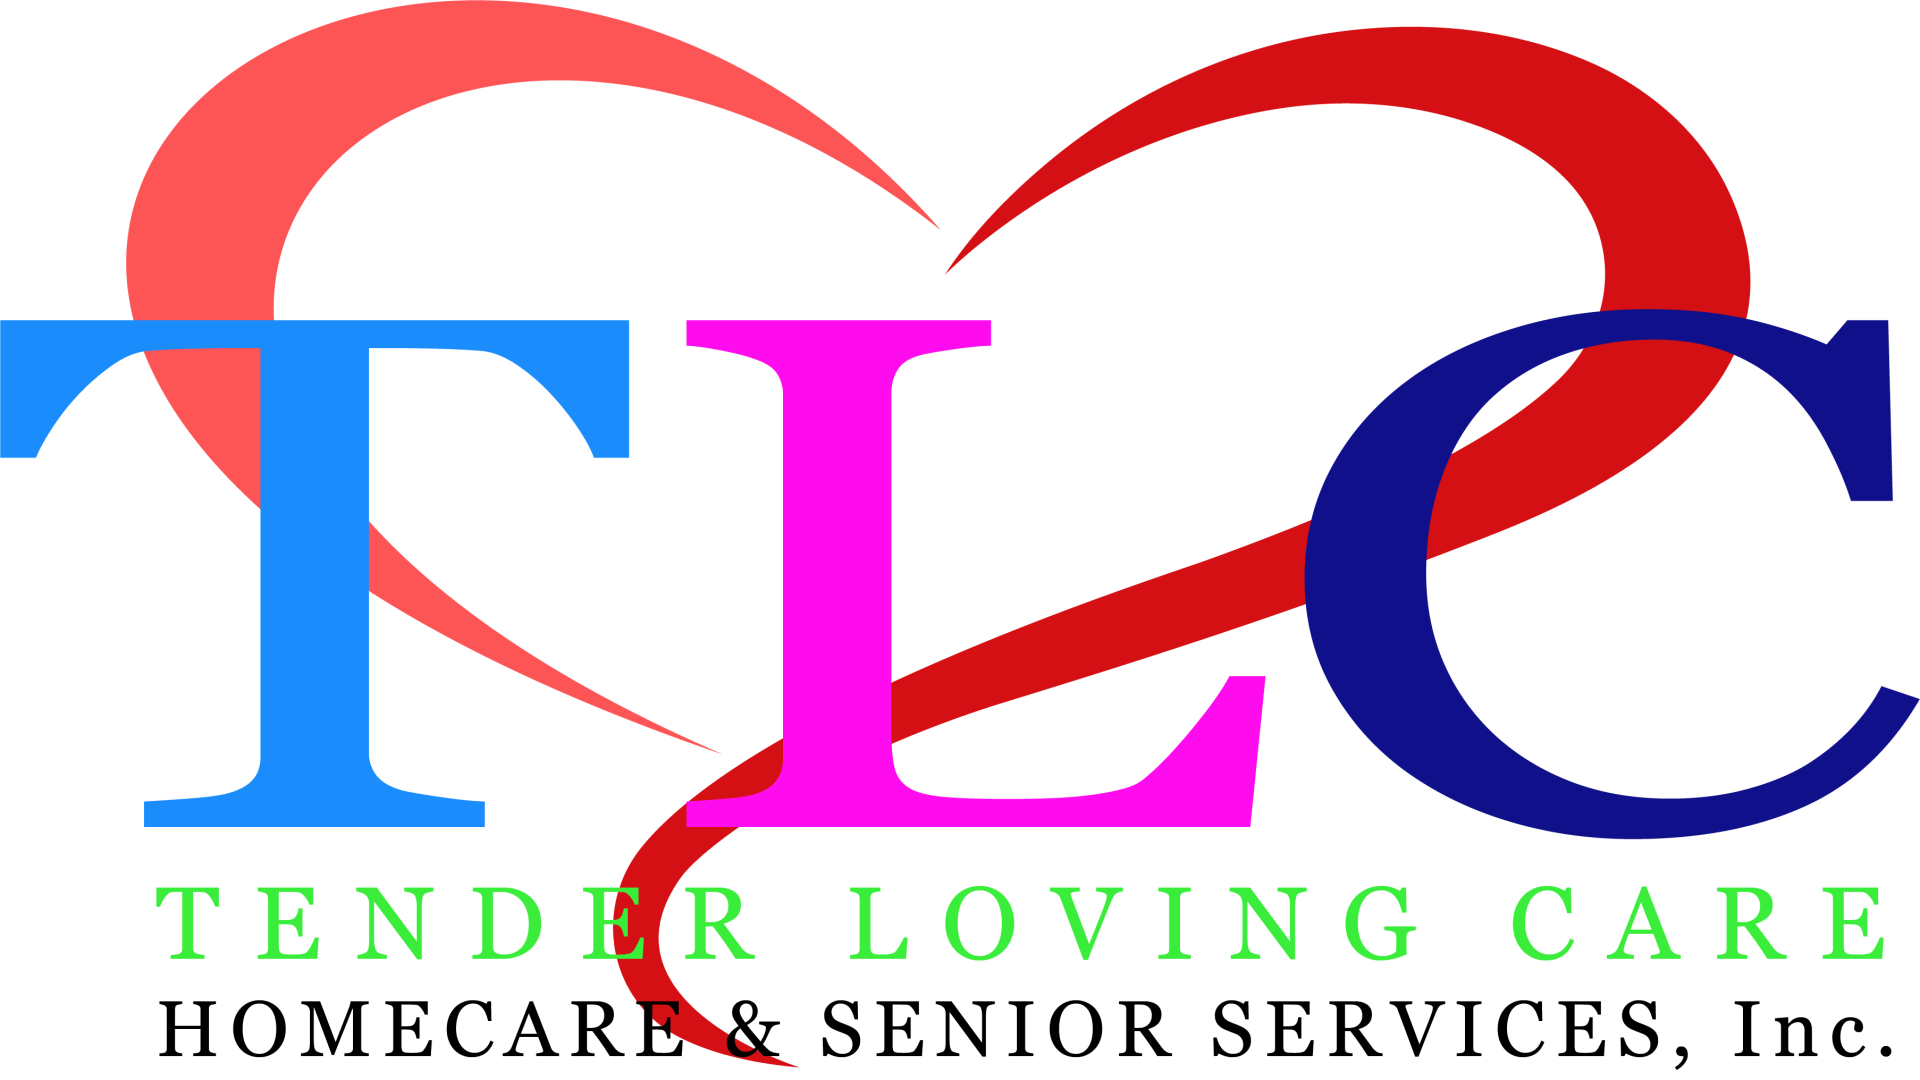 TLC Homecare and Senior Services, Inc. logo